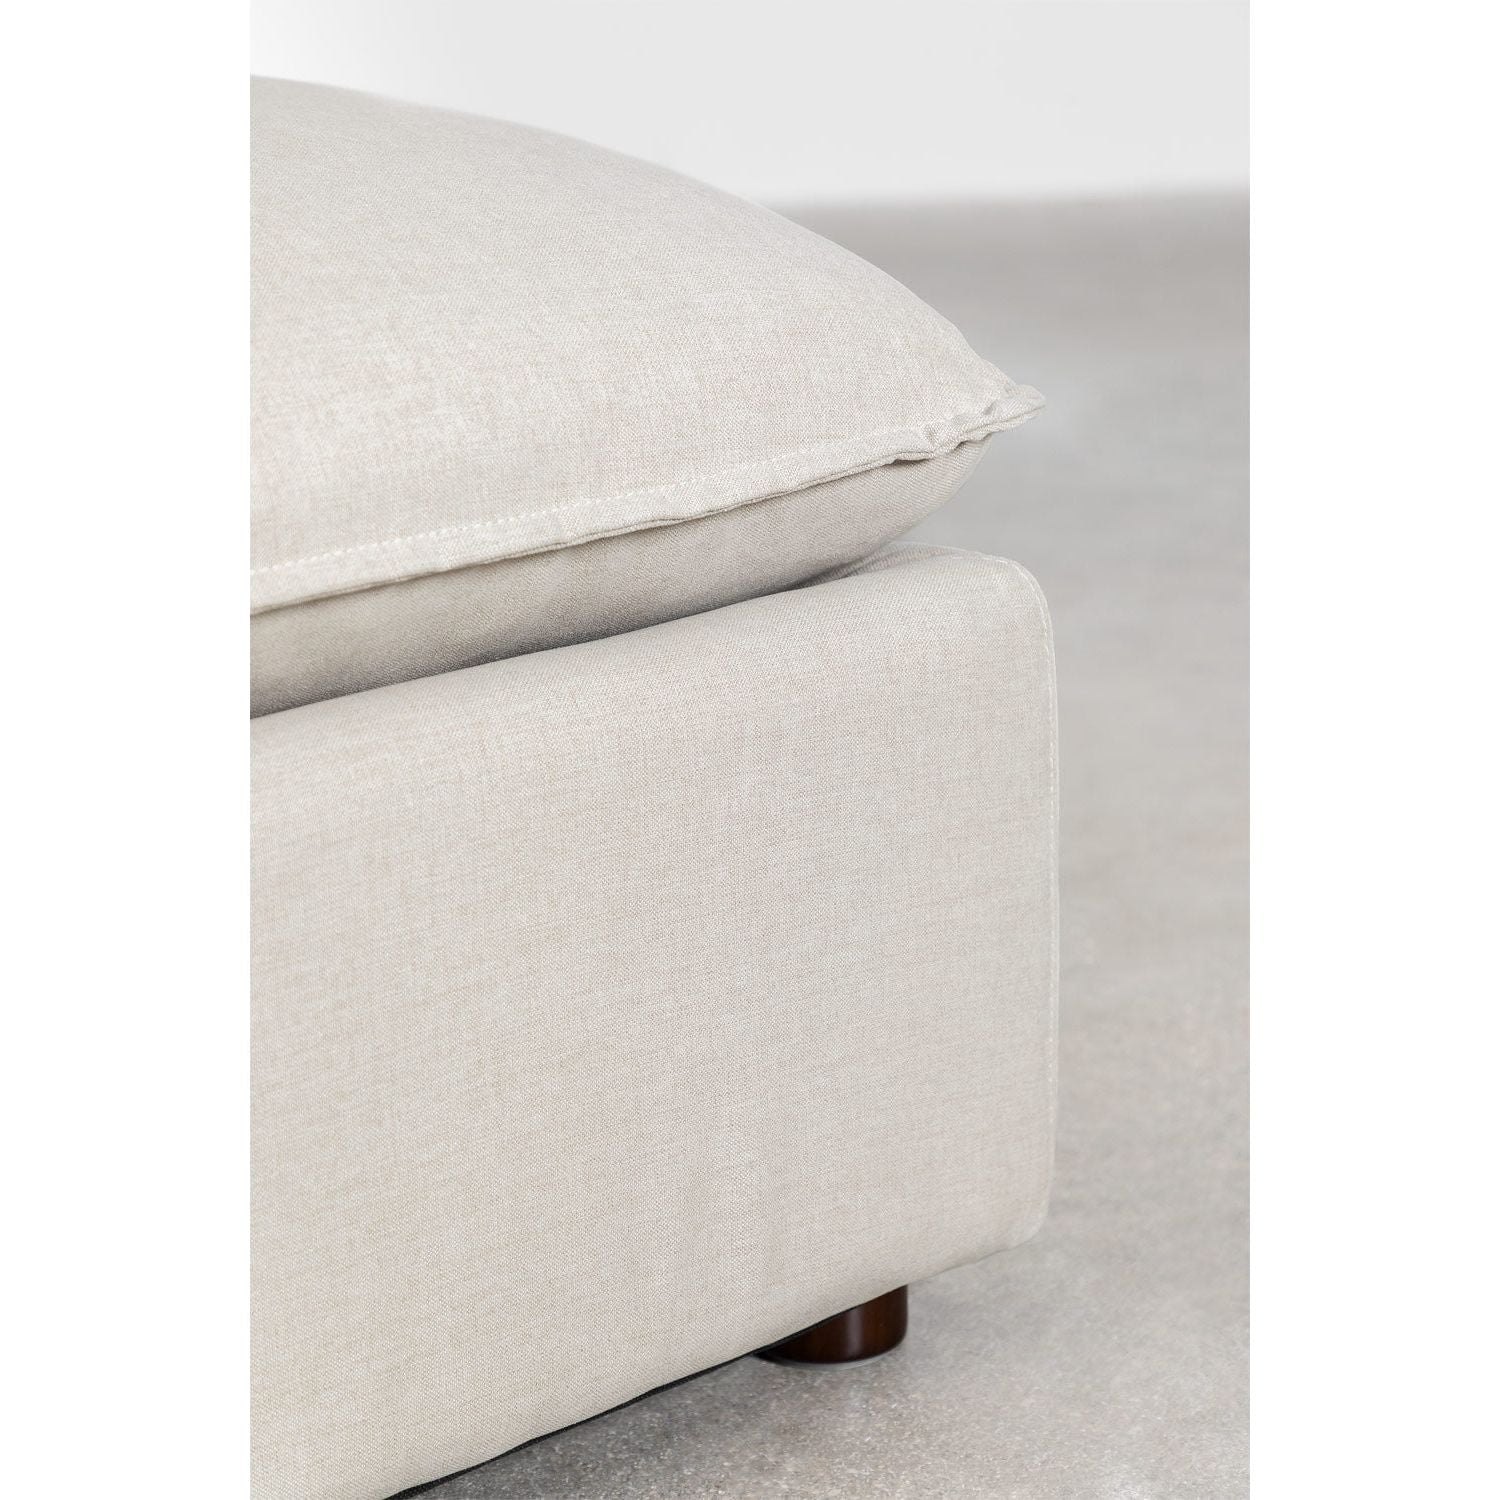 Modulinė 2-vietų sofa ESTEFAN, kreminė spalva